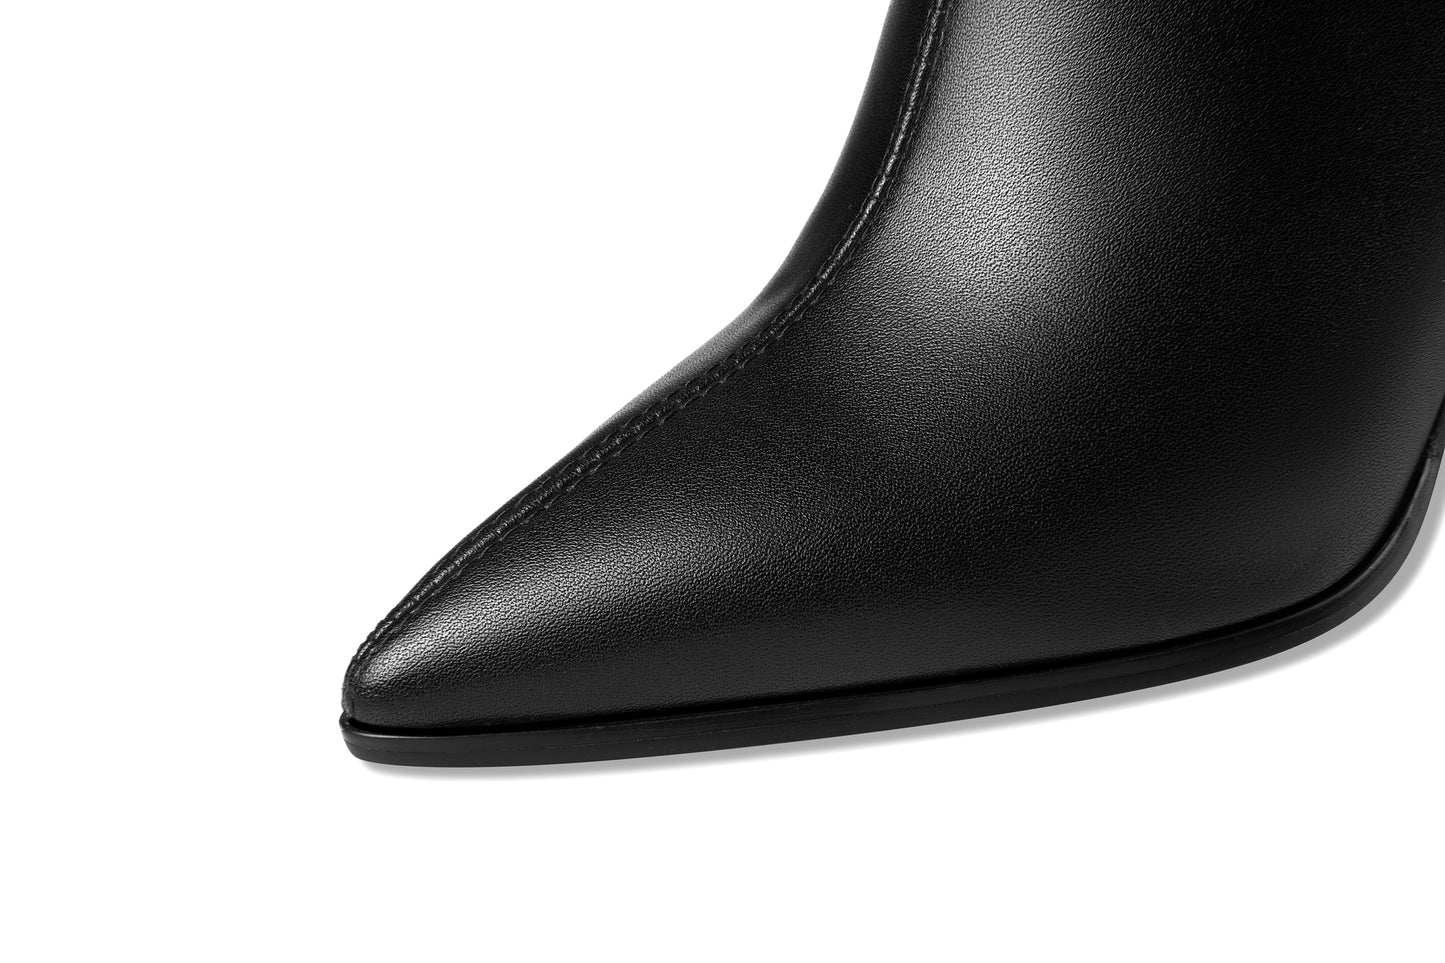 TinaCus Handmade Women's Genuine Leather Zip Up High Heel Fur Design Knee High Boots